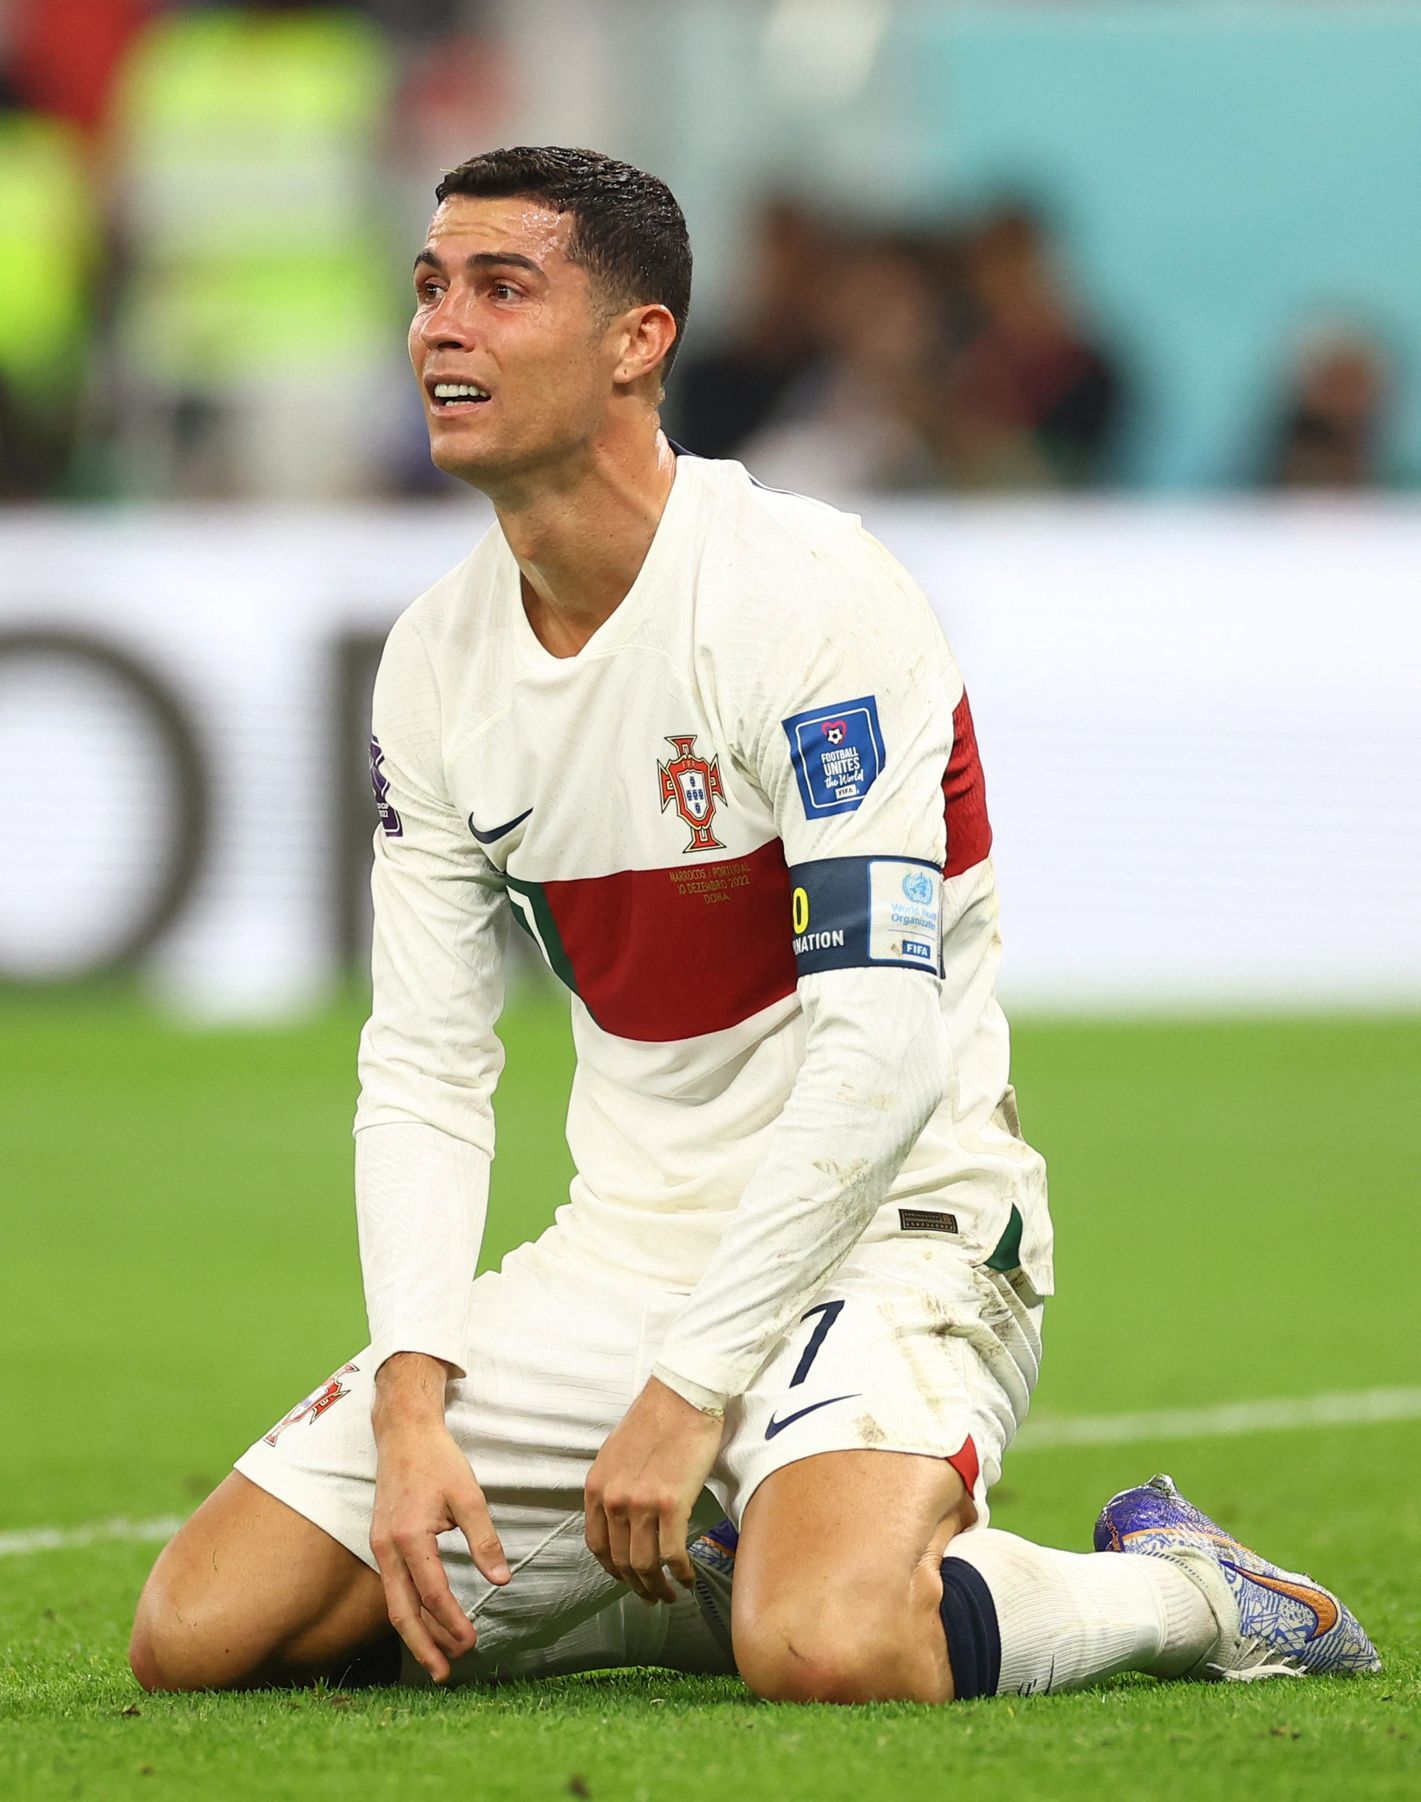 La chute de Ronaldo est une triste histoire.  Il aurait dû partir dignement, la tête haute, pensa Fukal